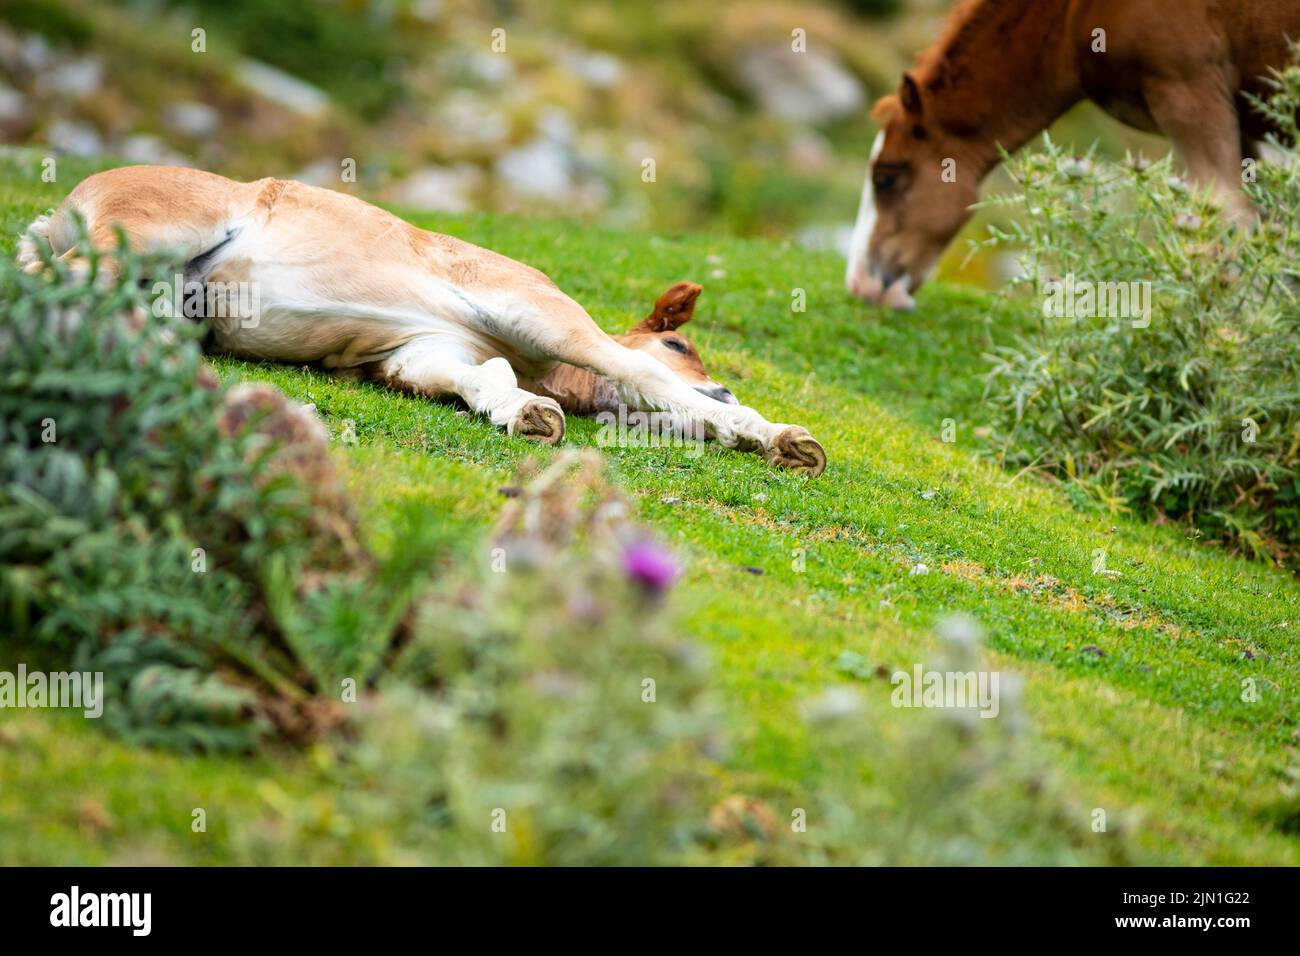 Homme foal reposant dans l'herbe avec sa mère à côté (equus ferus cabalus) Cavall Pirinenc Català (Cheval pyrénéen catalan) Banque D'Images